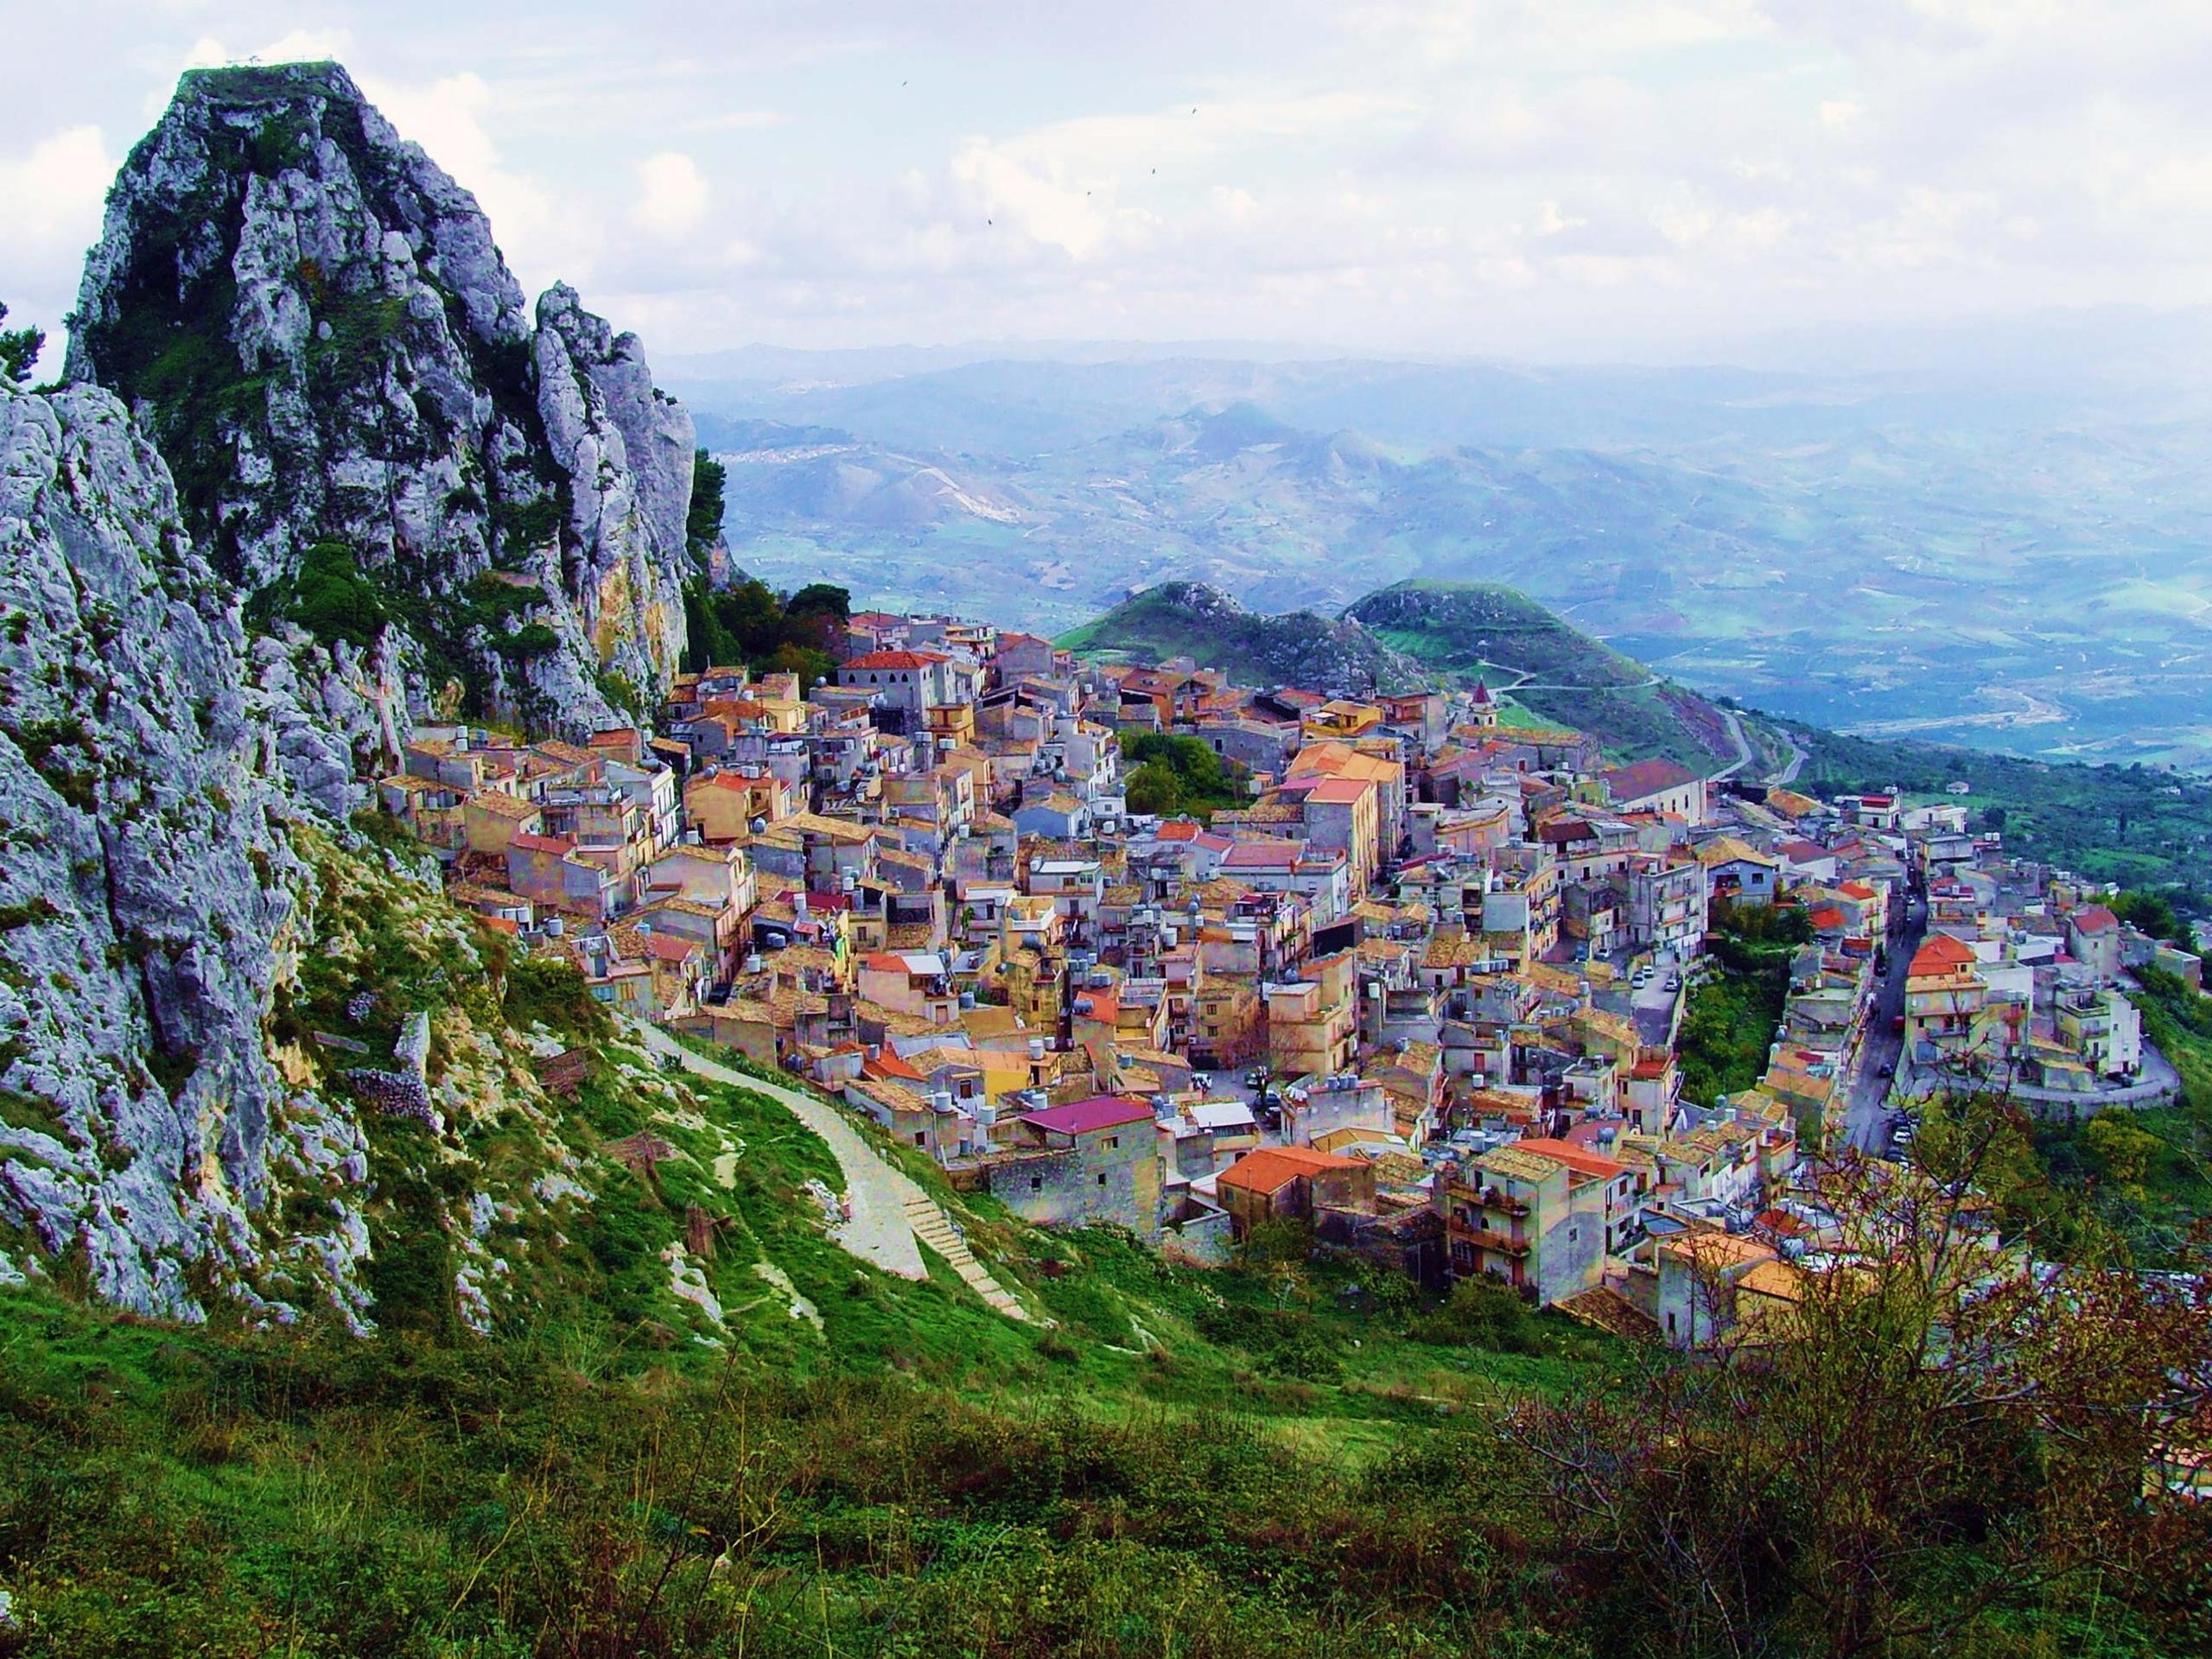 "Caltabellotta: il Fascino del Borgo più Antico della Sicilia. Scopri la Storia e le Meraviglie di questo Incantevole Tesoro"